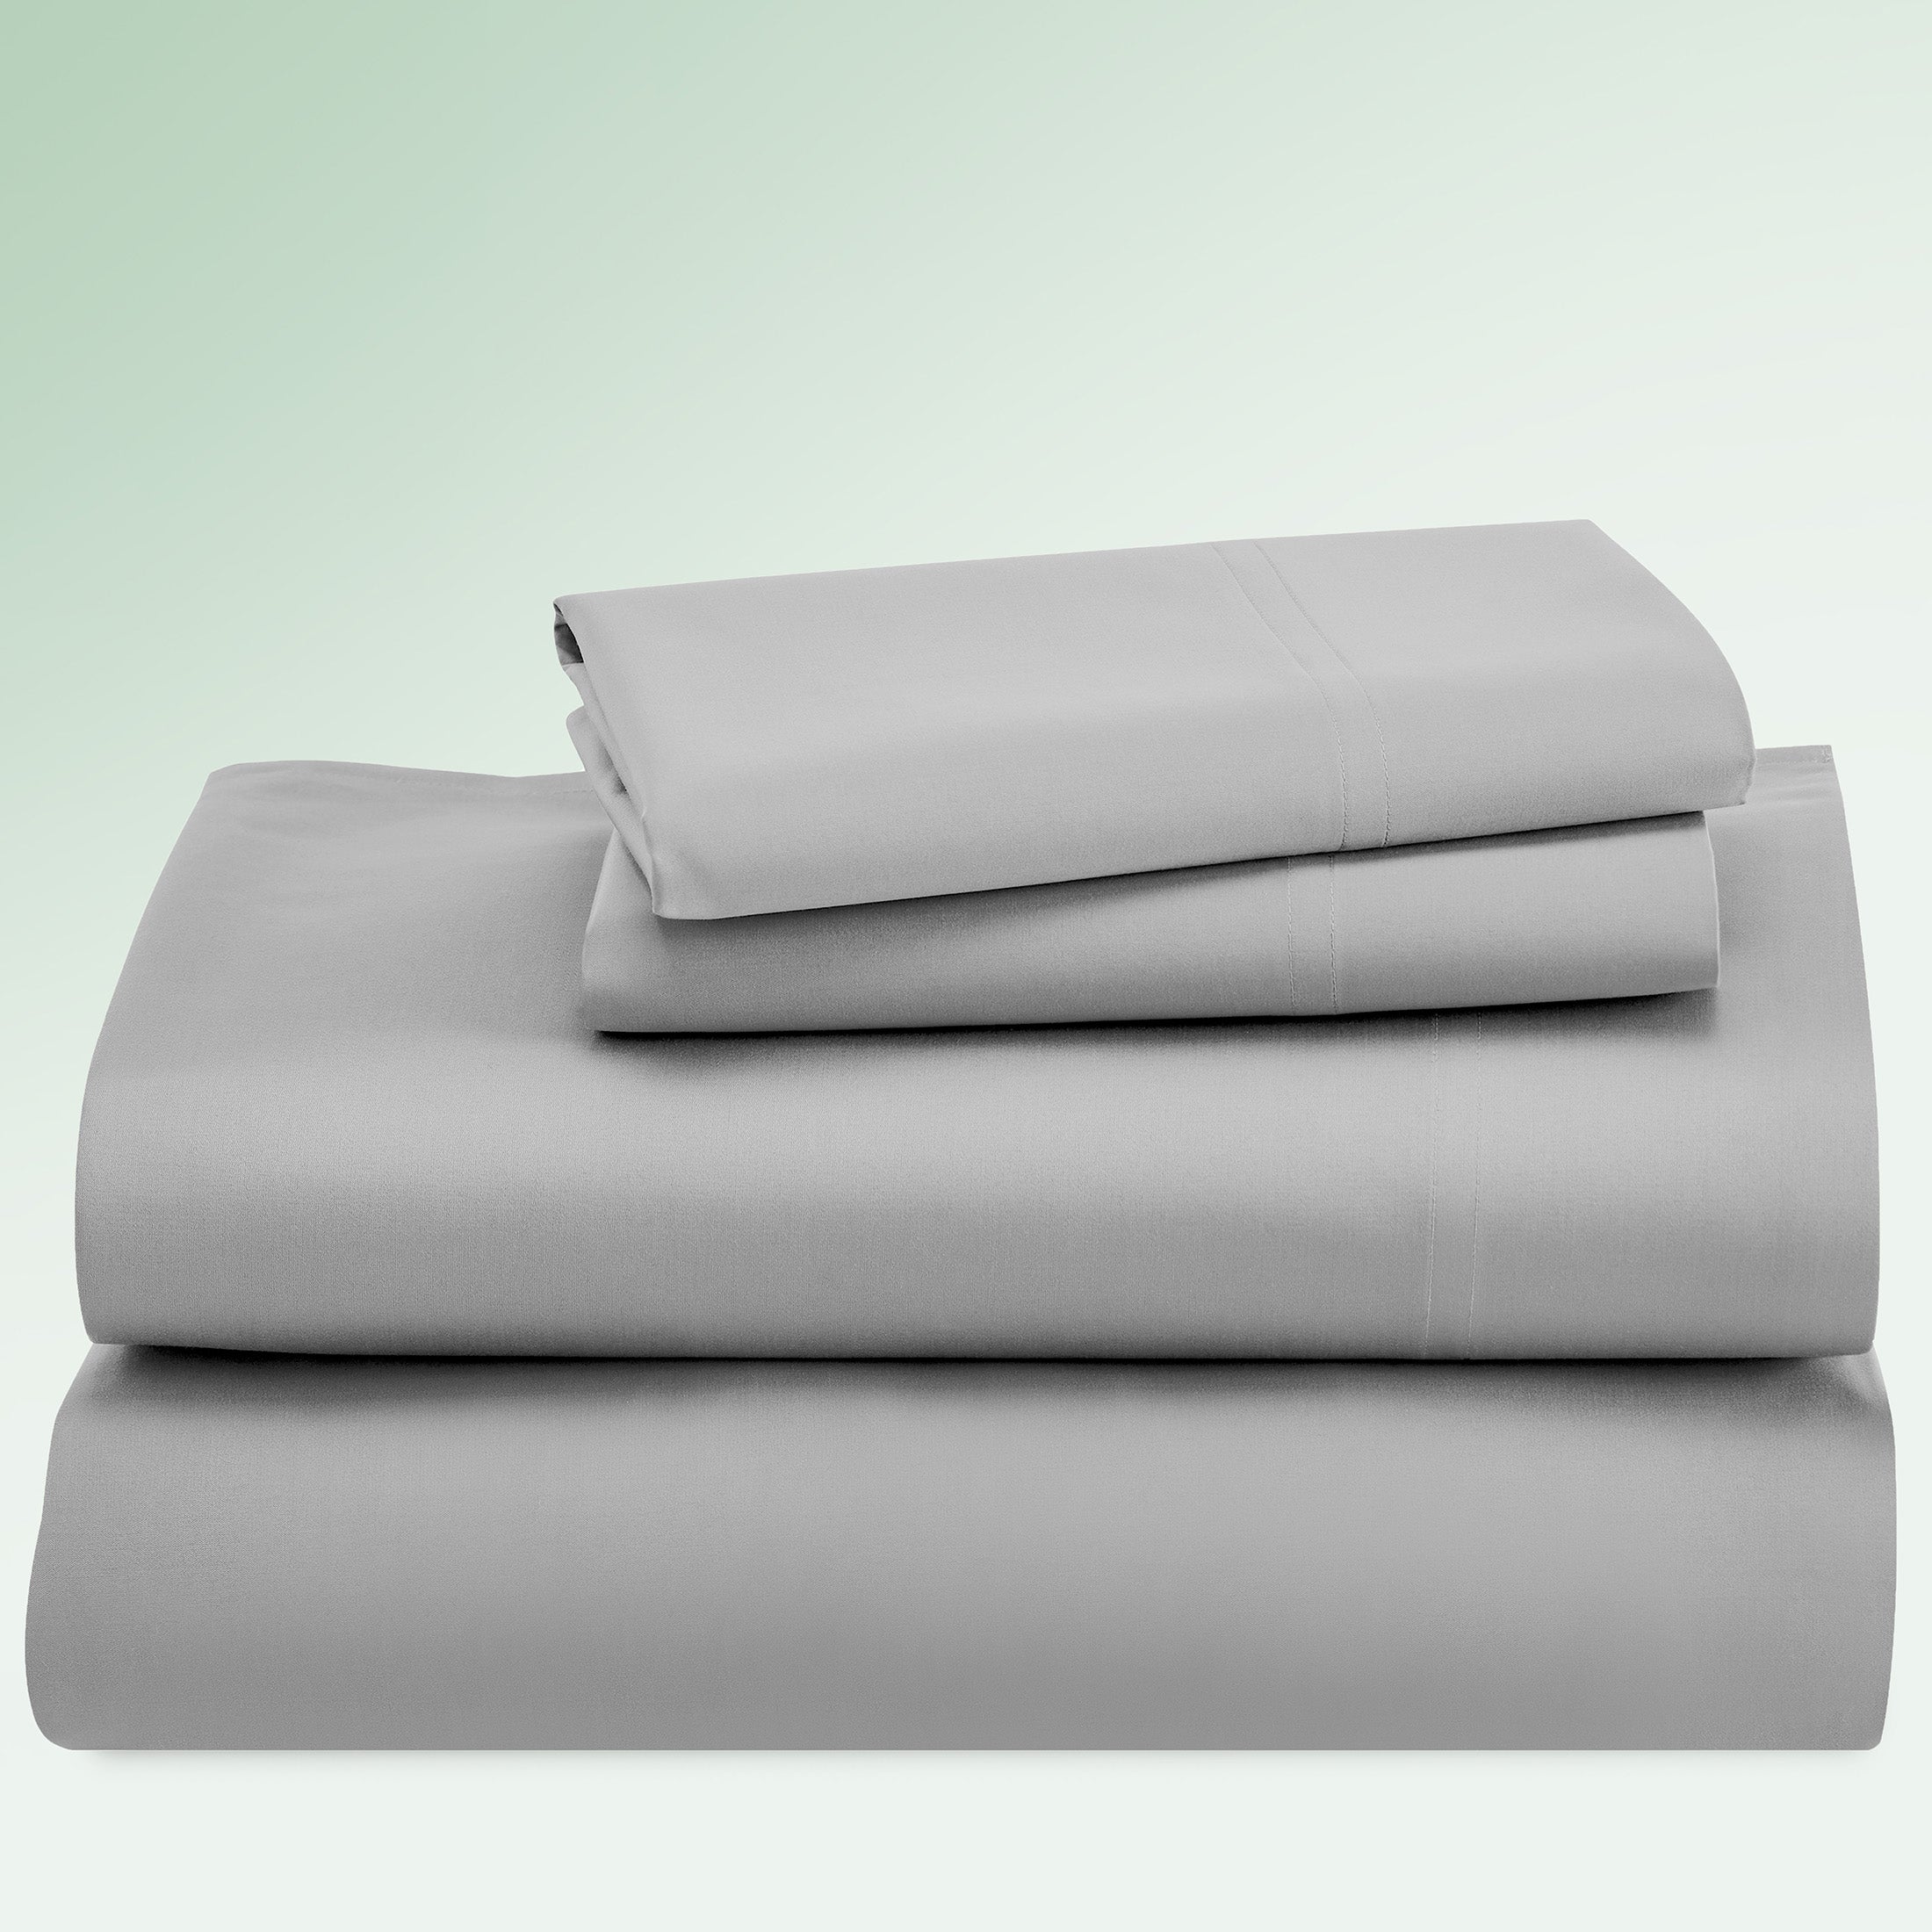  California Design Den Luxury 100% Cotton Bath Sheet